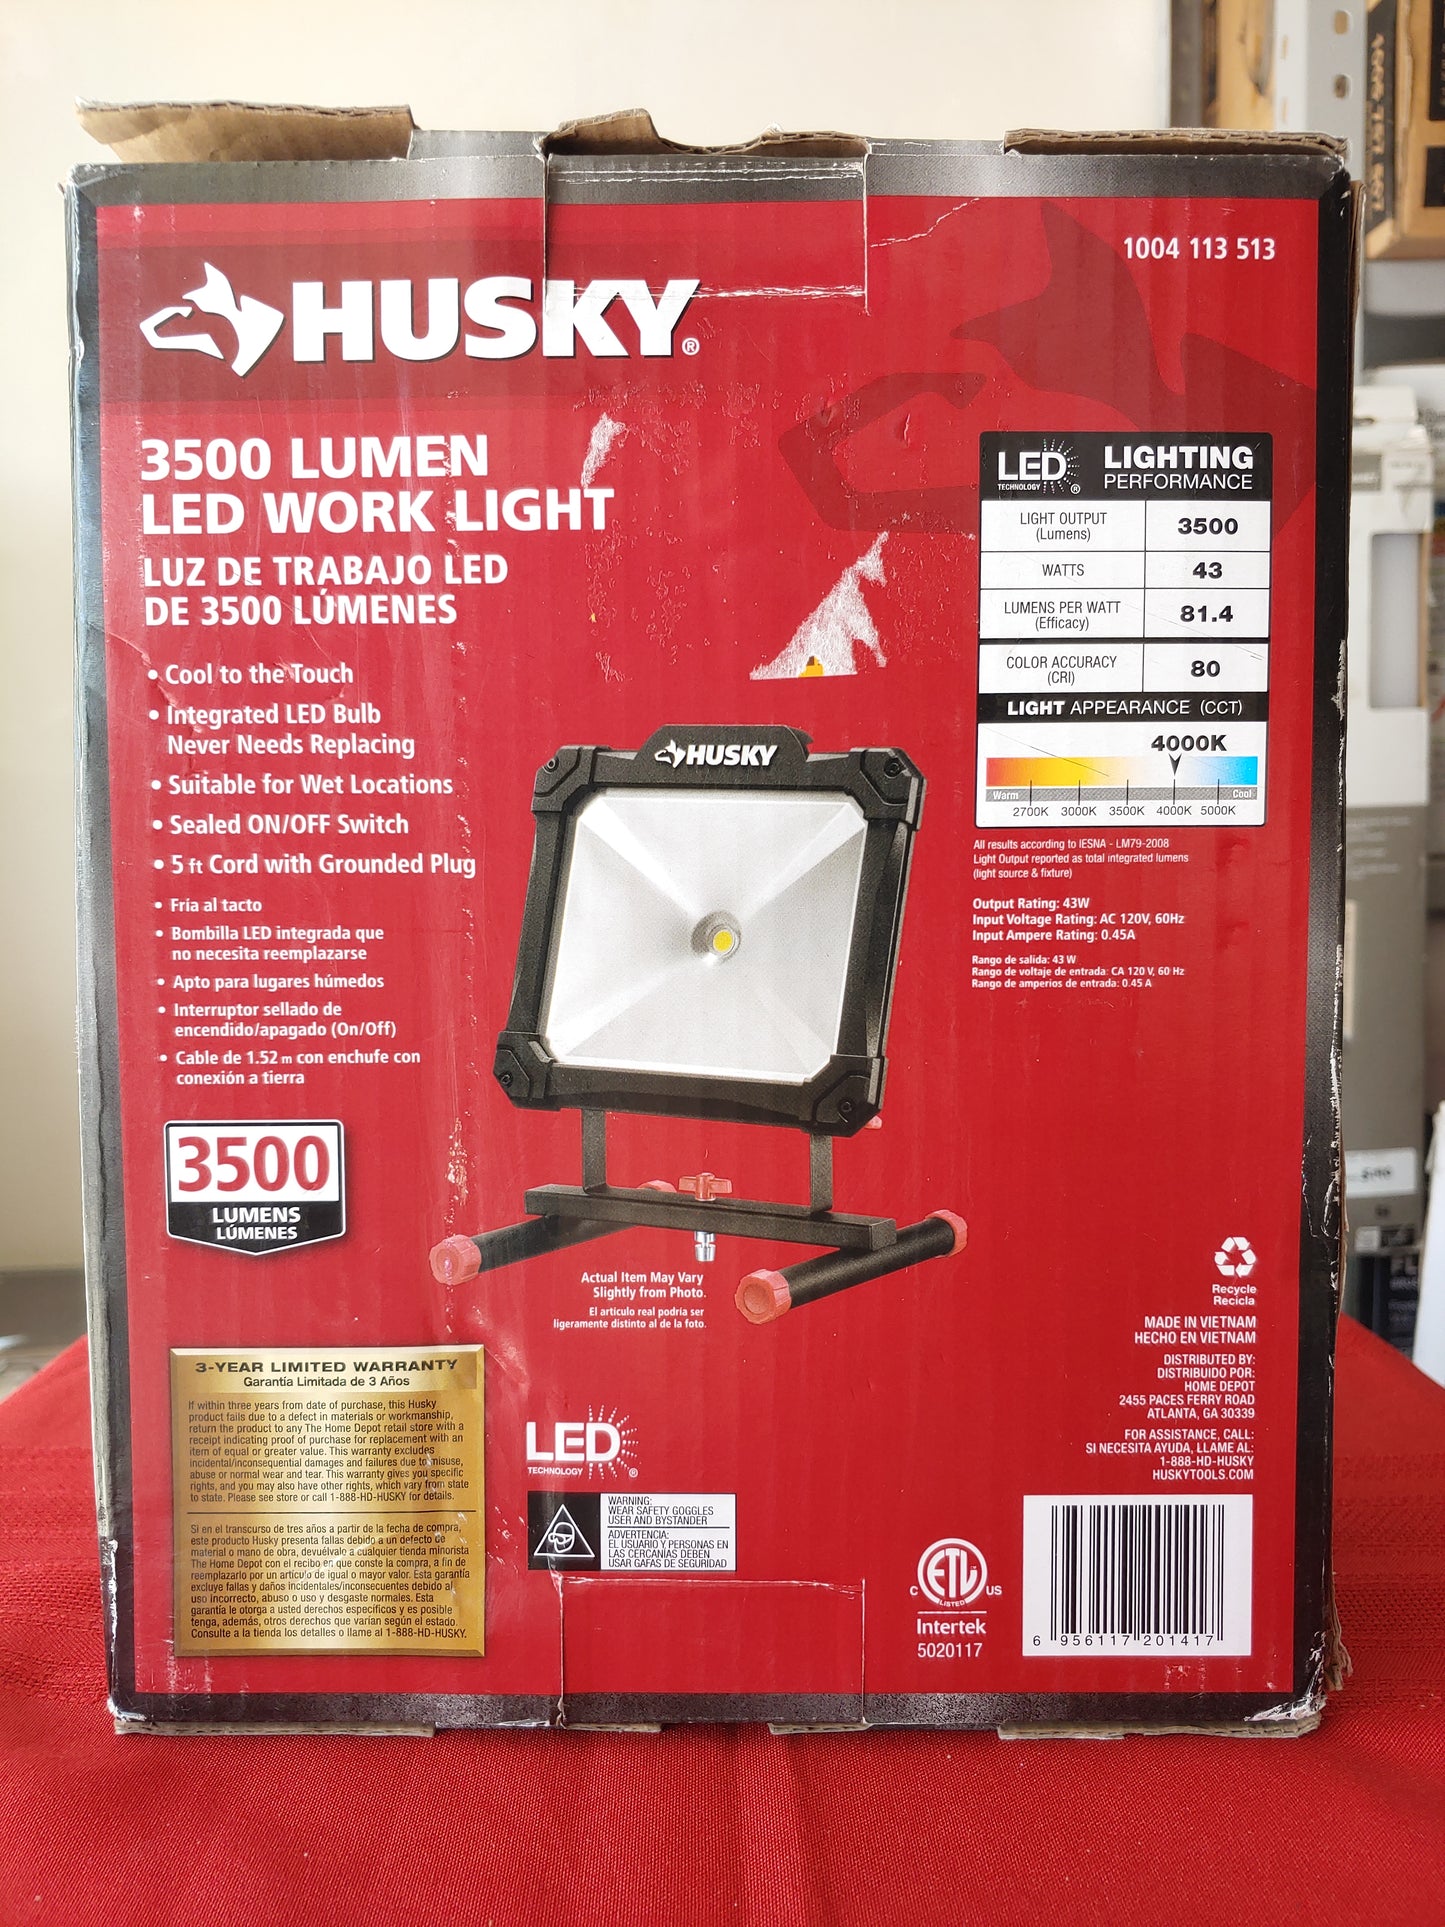 Lámpara de trabajo LED de 3500 lúmenes para interiores y exteriores - Husky (Nuevo, caja abierta)